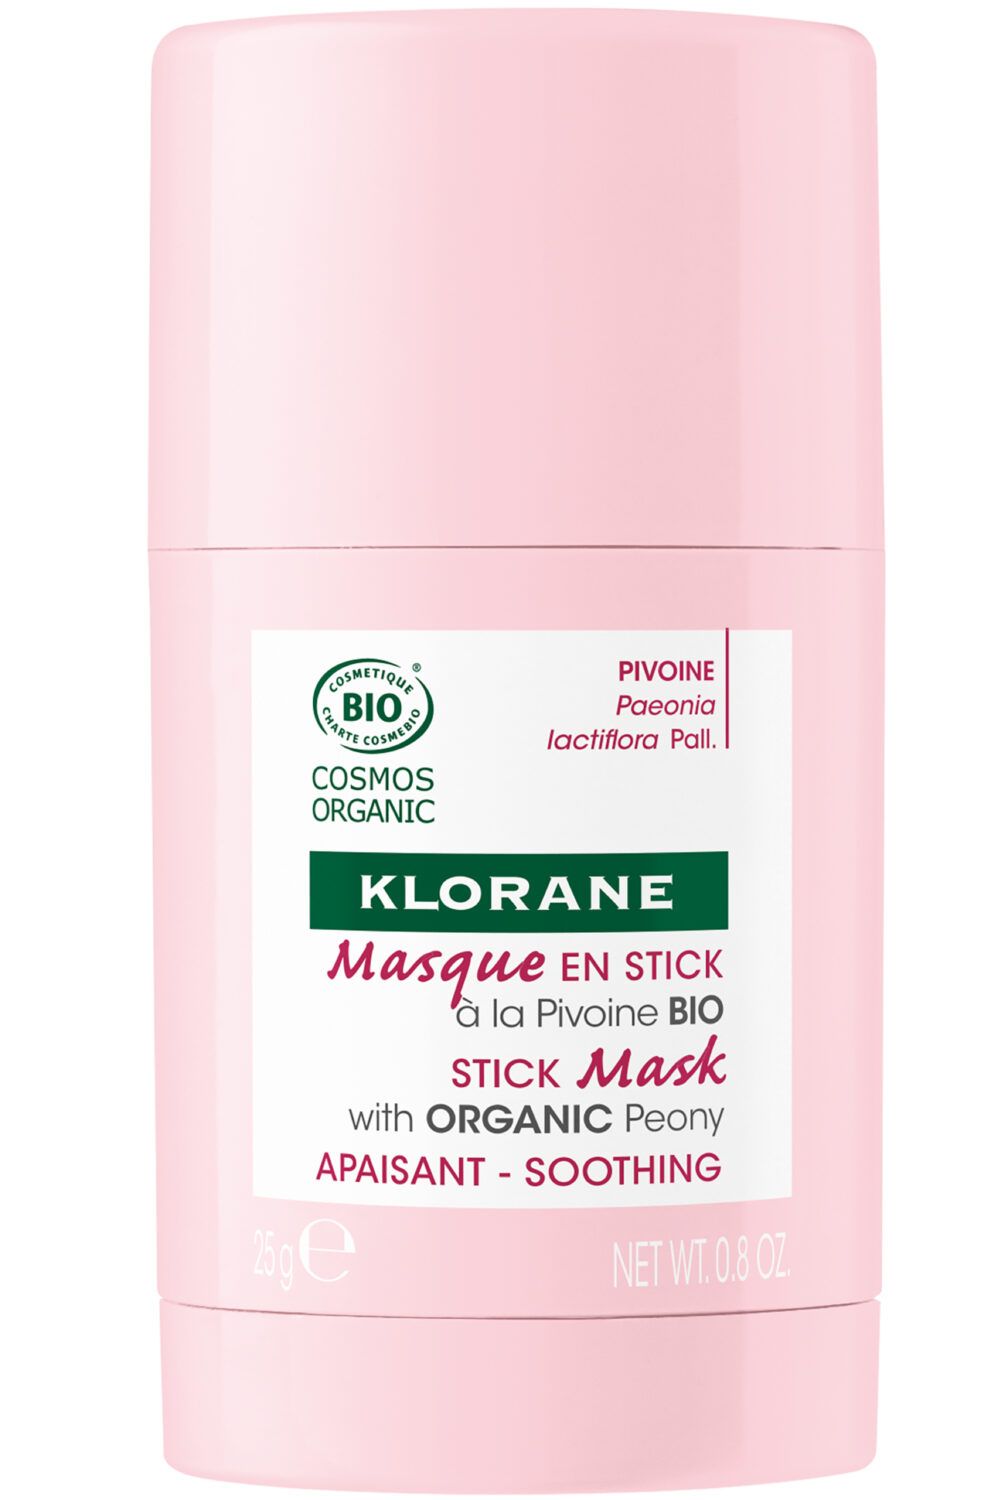 Klorane - Masque en stick apaisant à la Pivoine bio